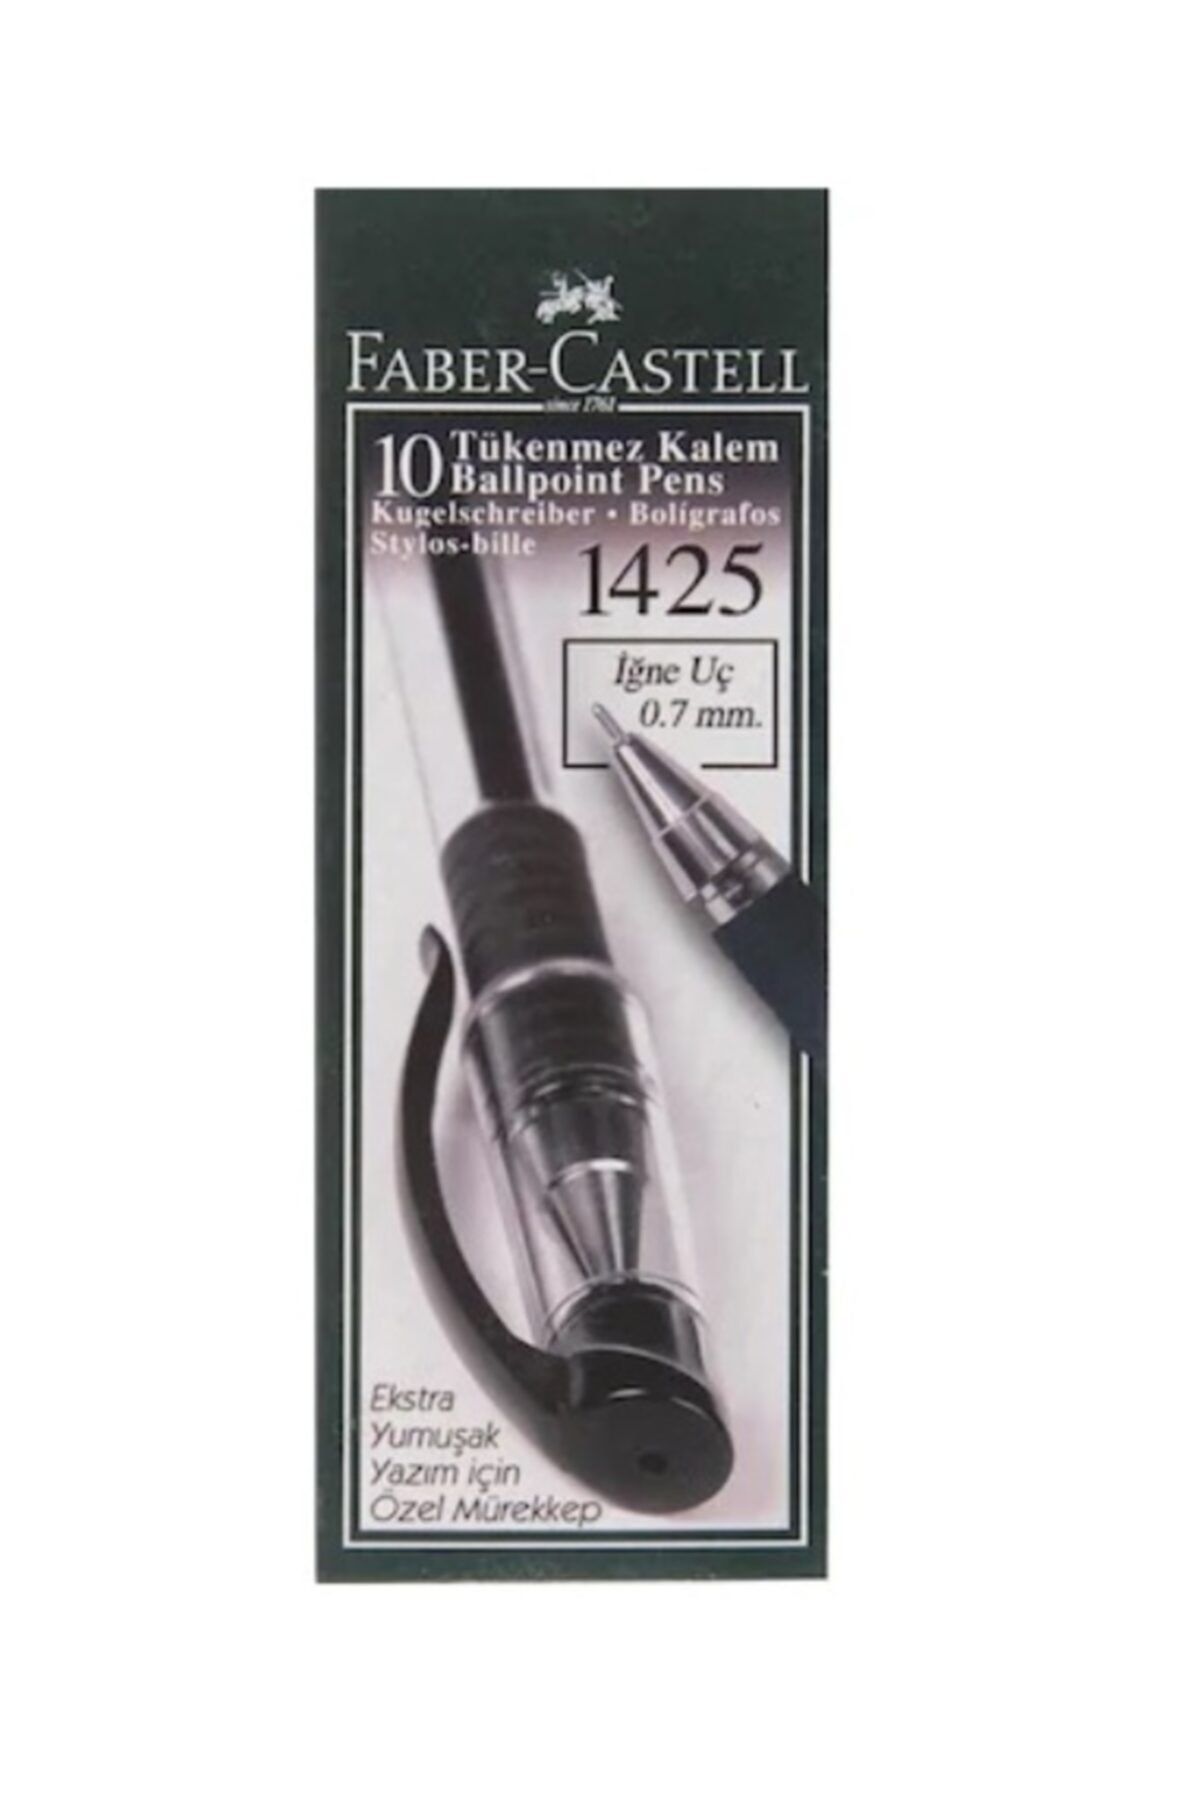 Faber Castell Faber-castell 1425 Iğne Uç Tükenmez Kalem Siyah 10 Lu 5211142599000 (1 Paket 10 Adet)